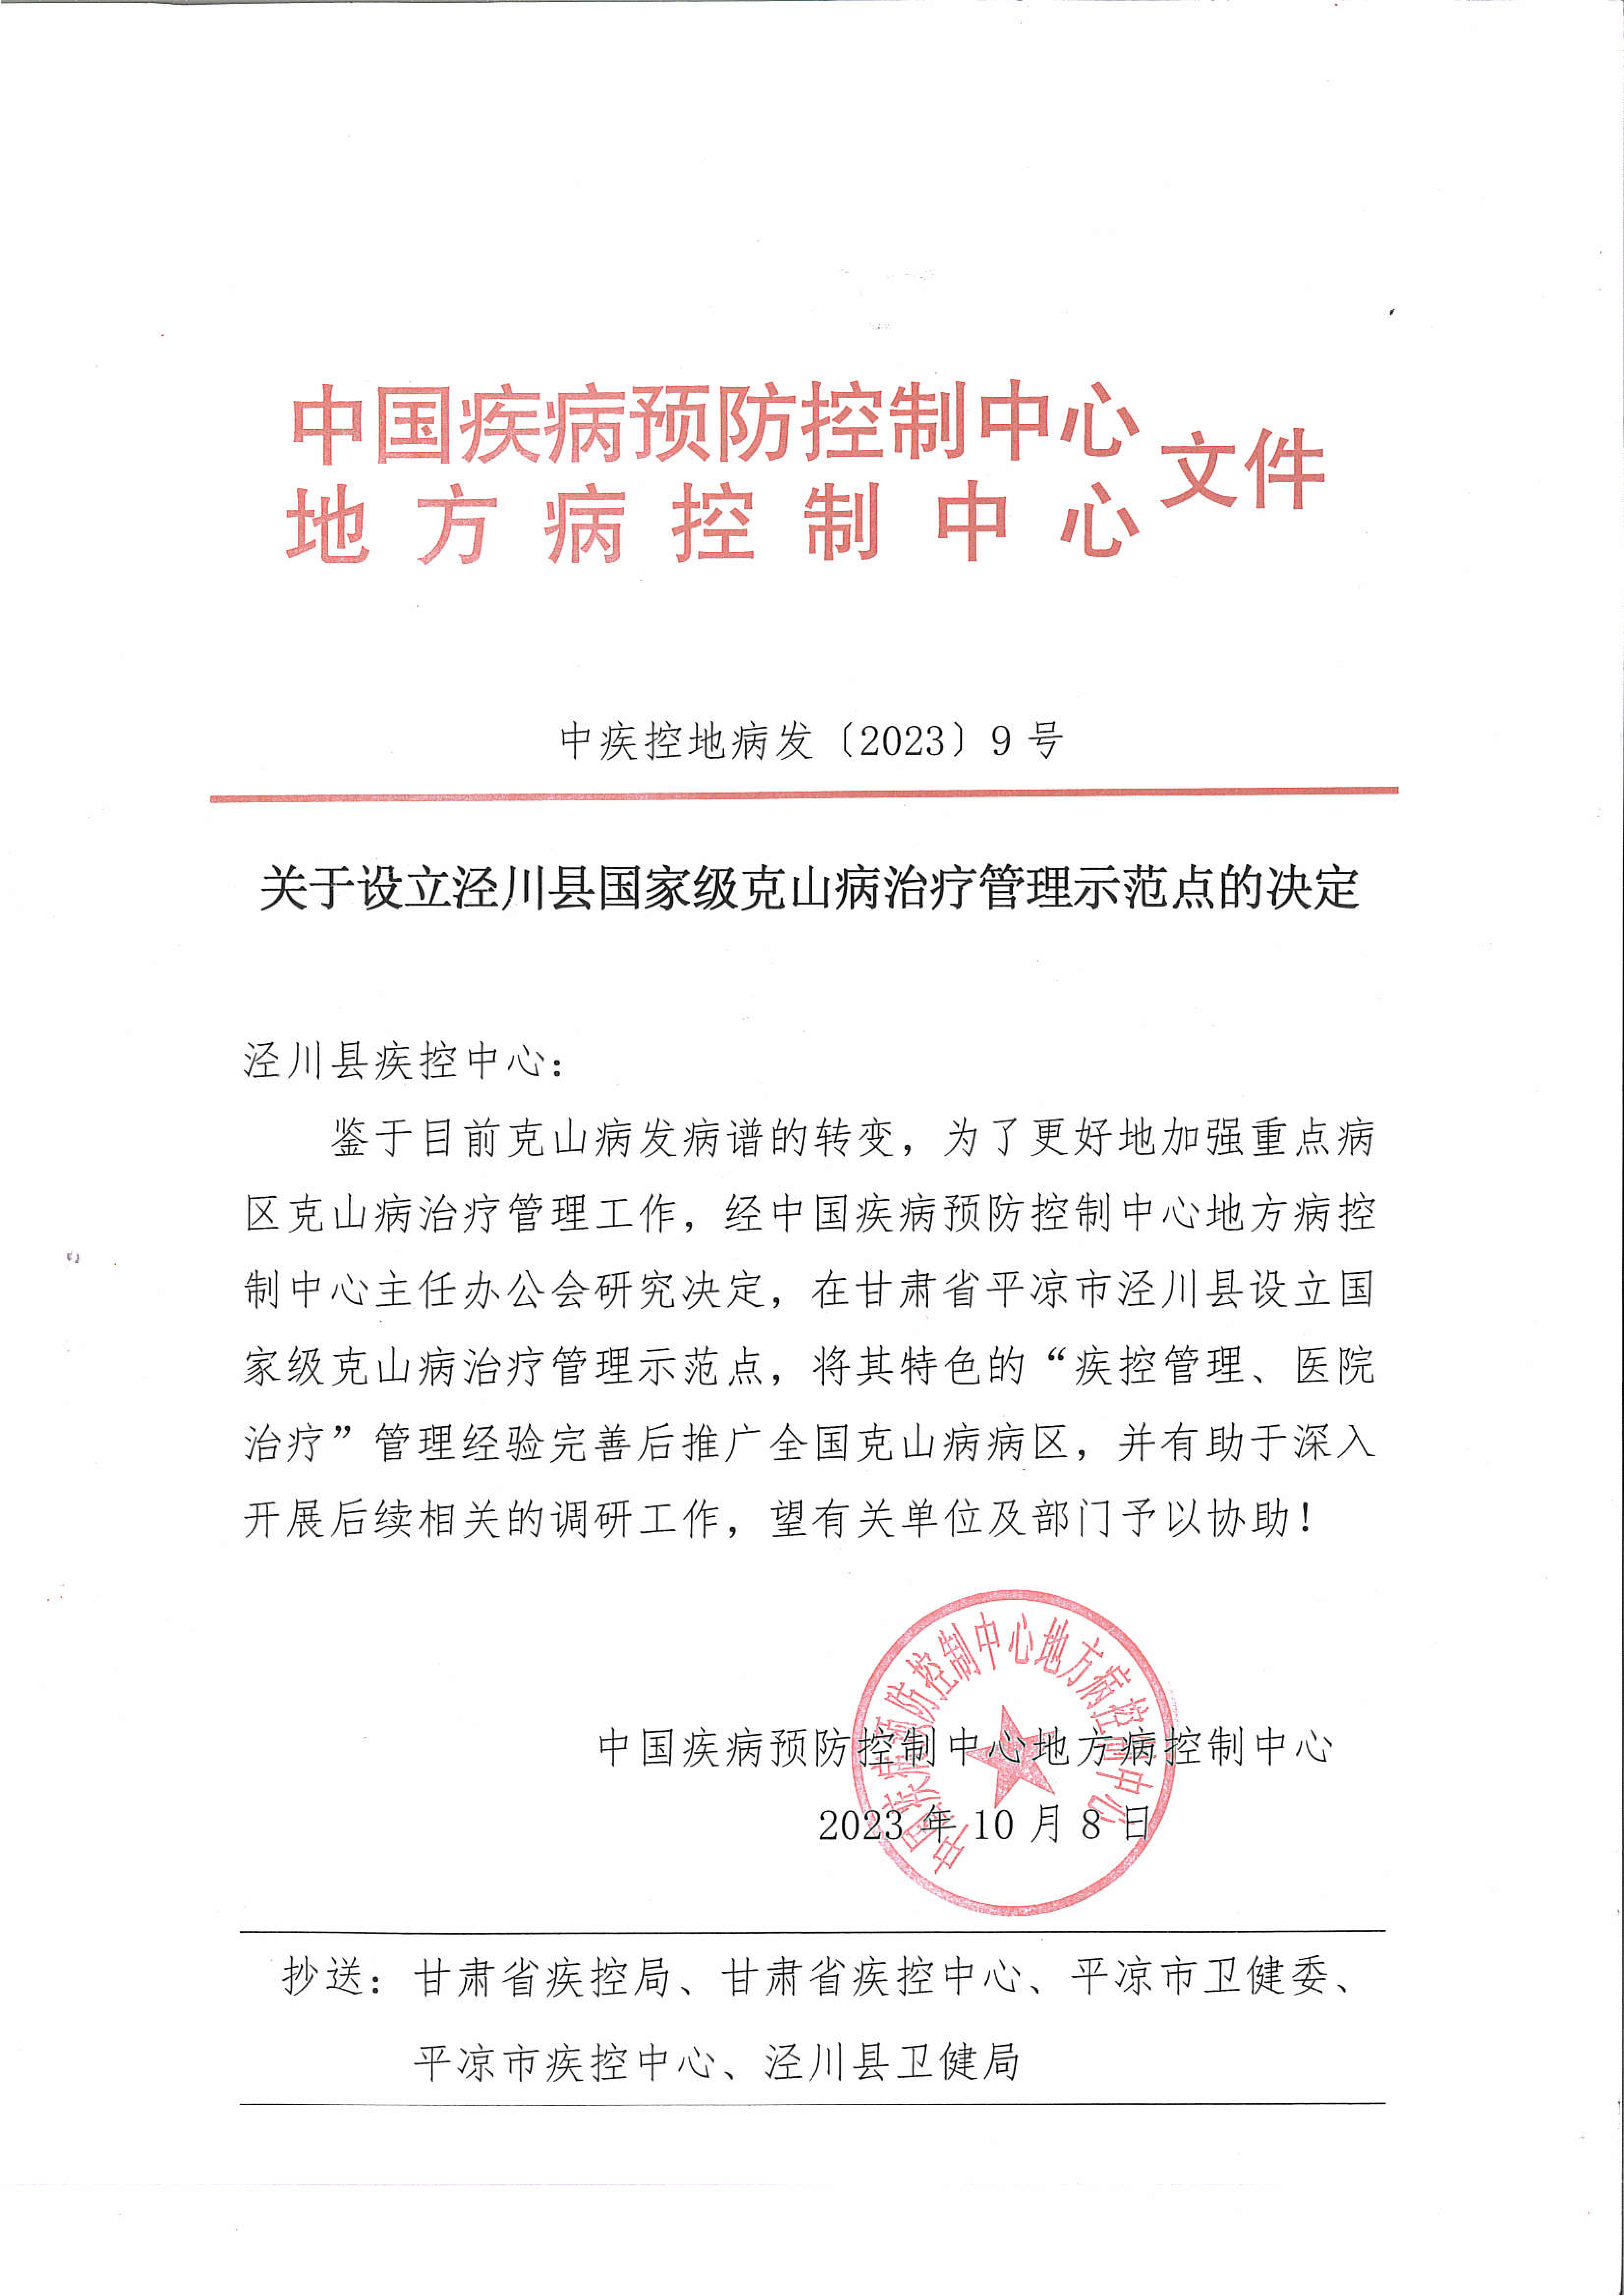 平凉市泾川县被确定为国家级克山病治疗管理示范点